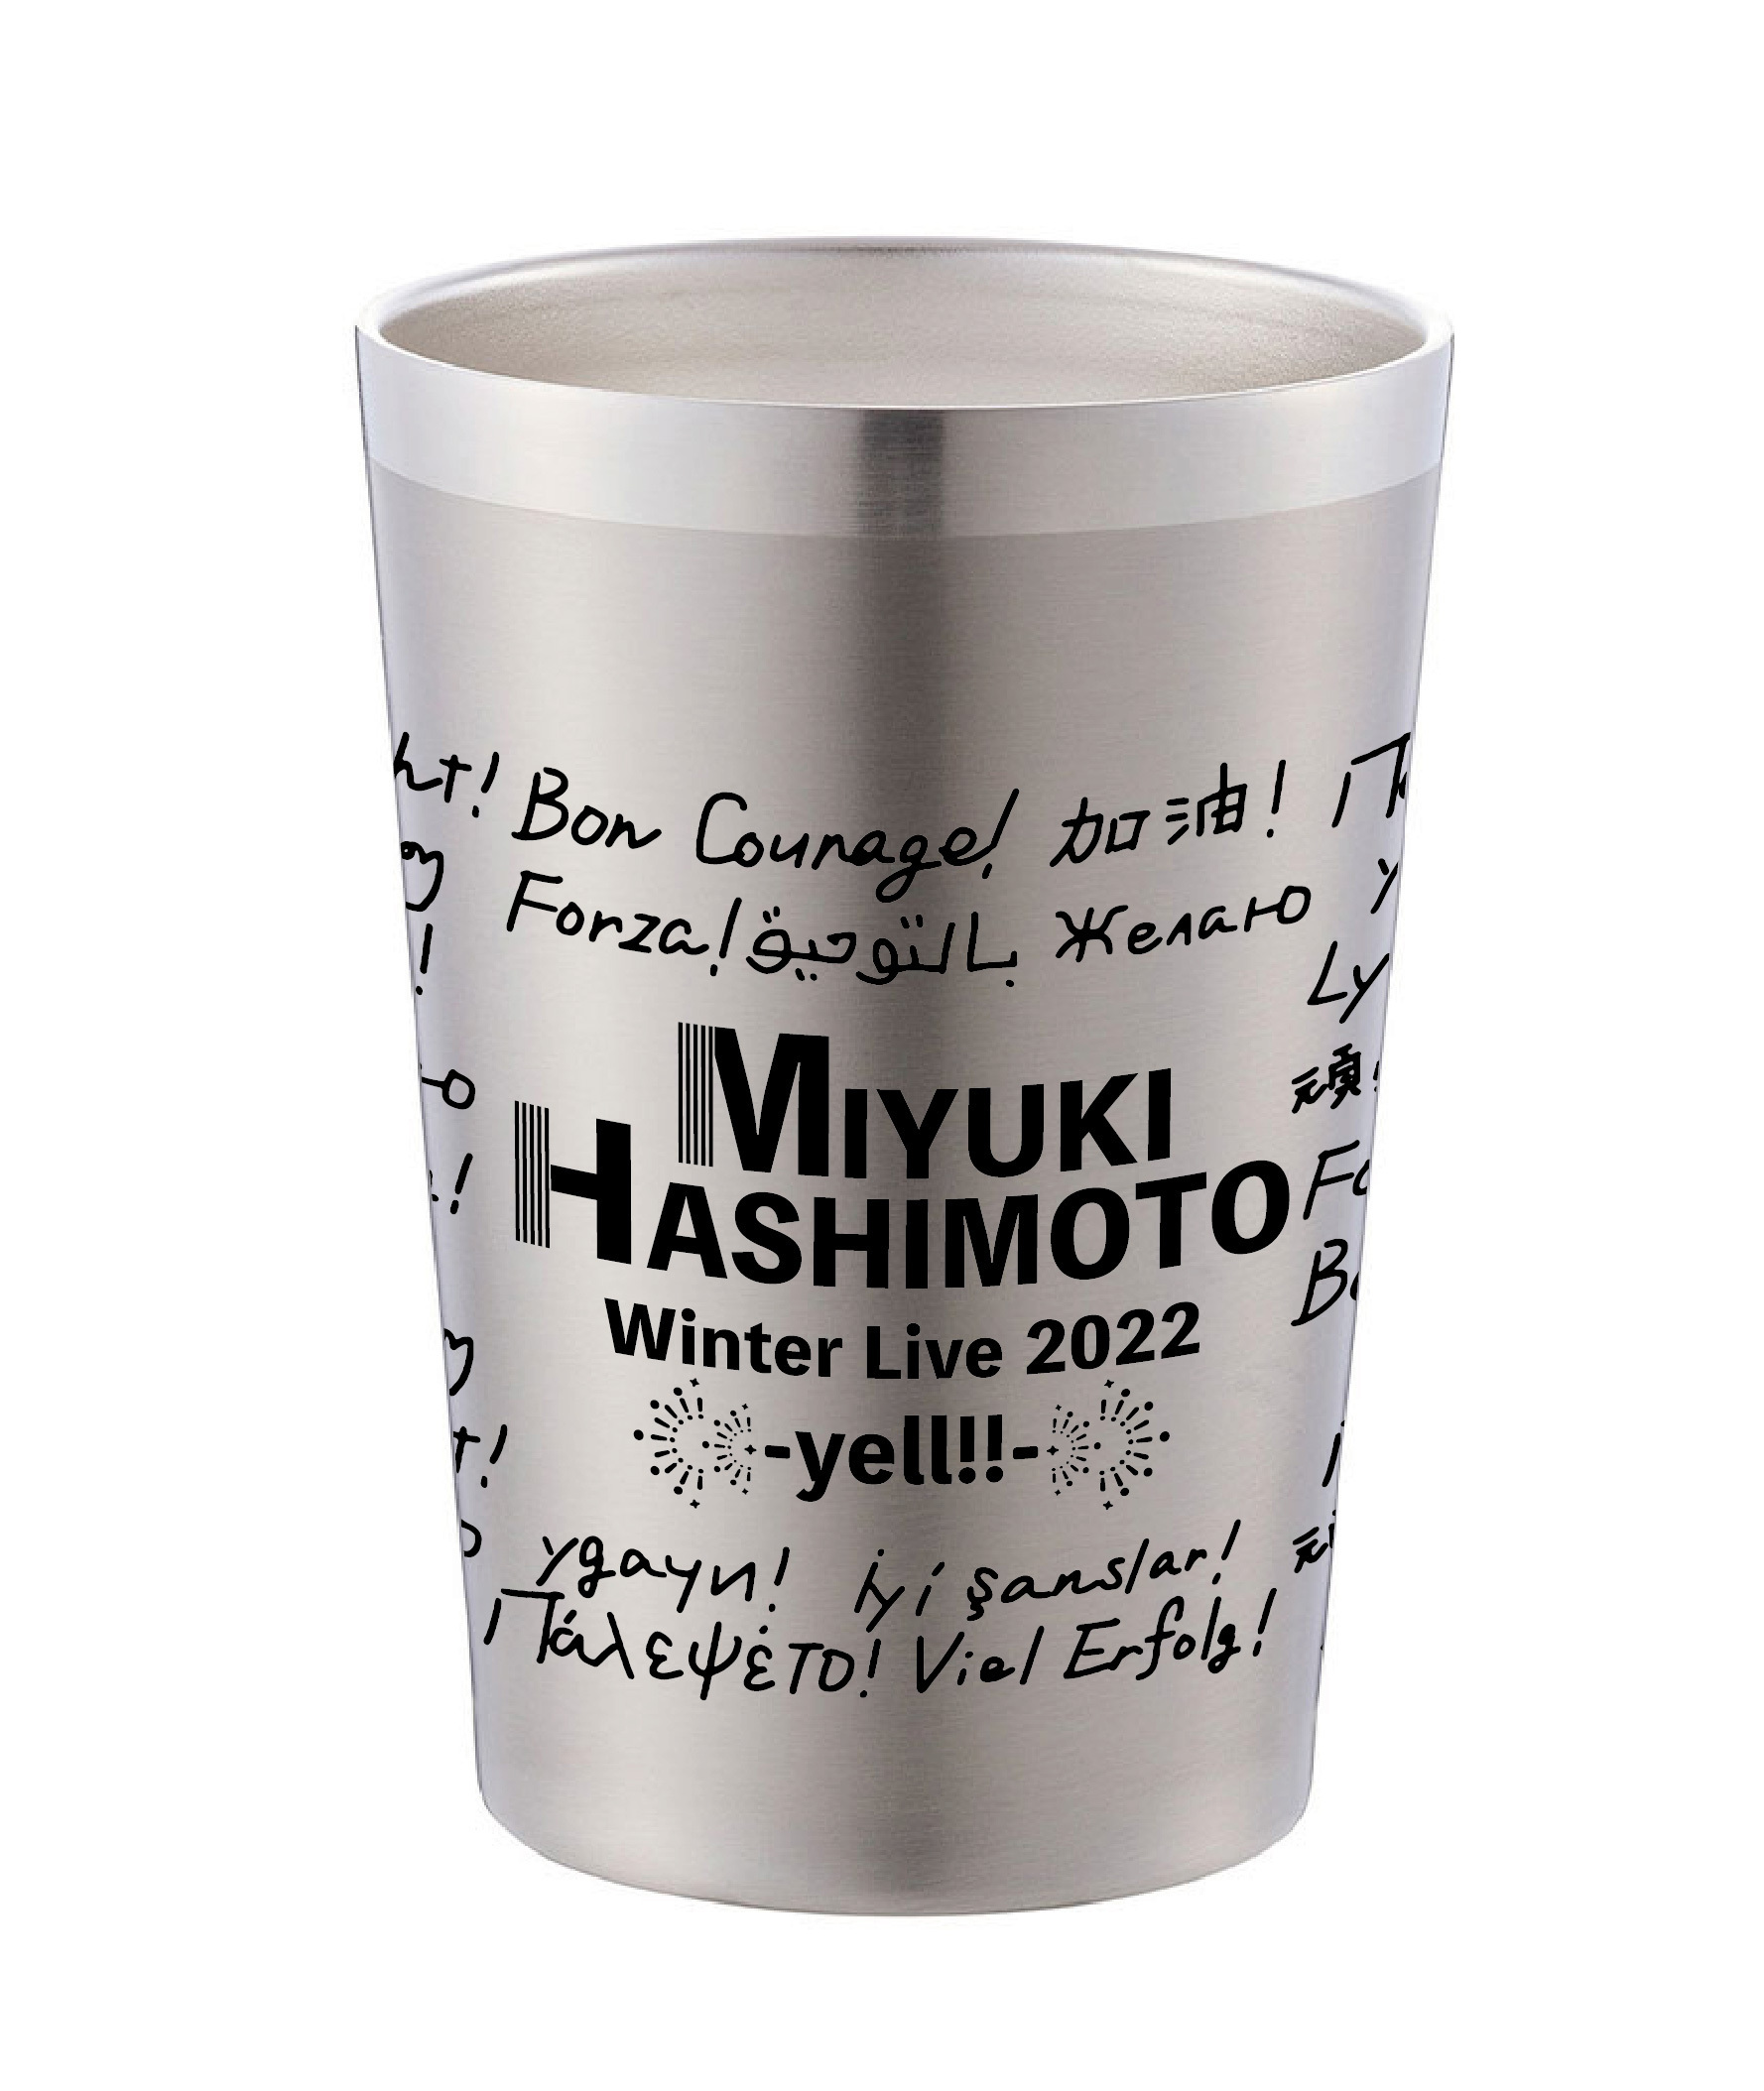 【橋本みゆき】タンブラー MIYUKI HASHIMOTO Winter Live2022 -yell!-